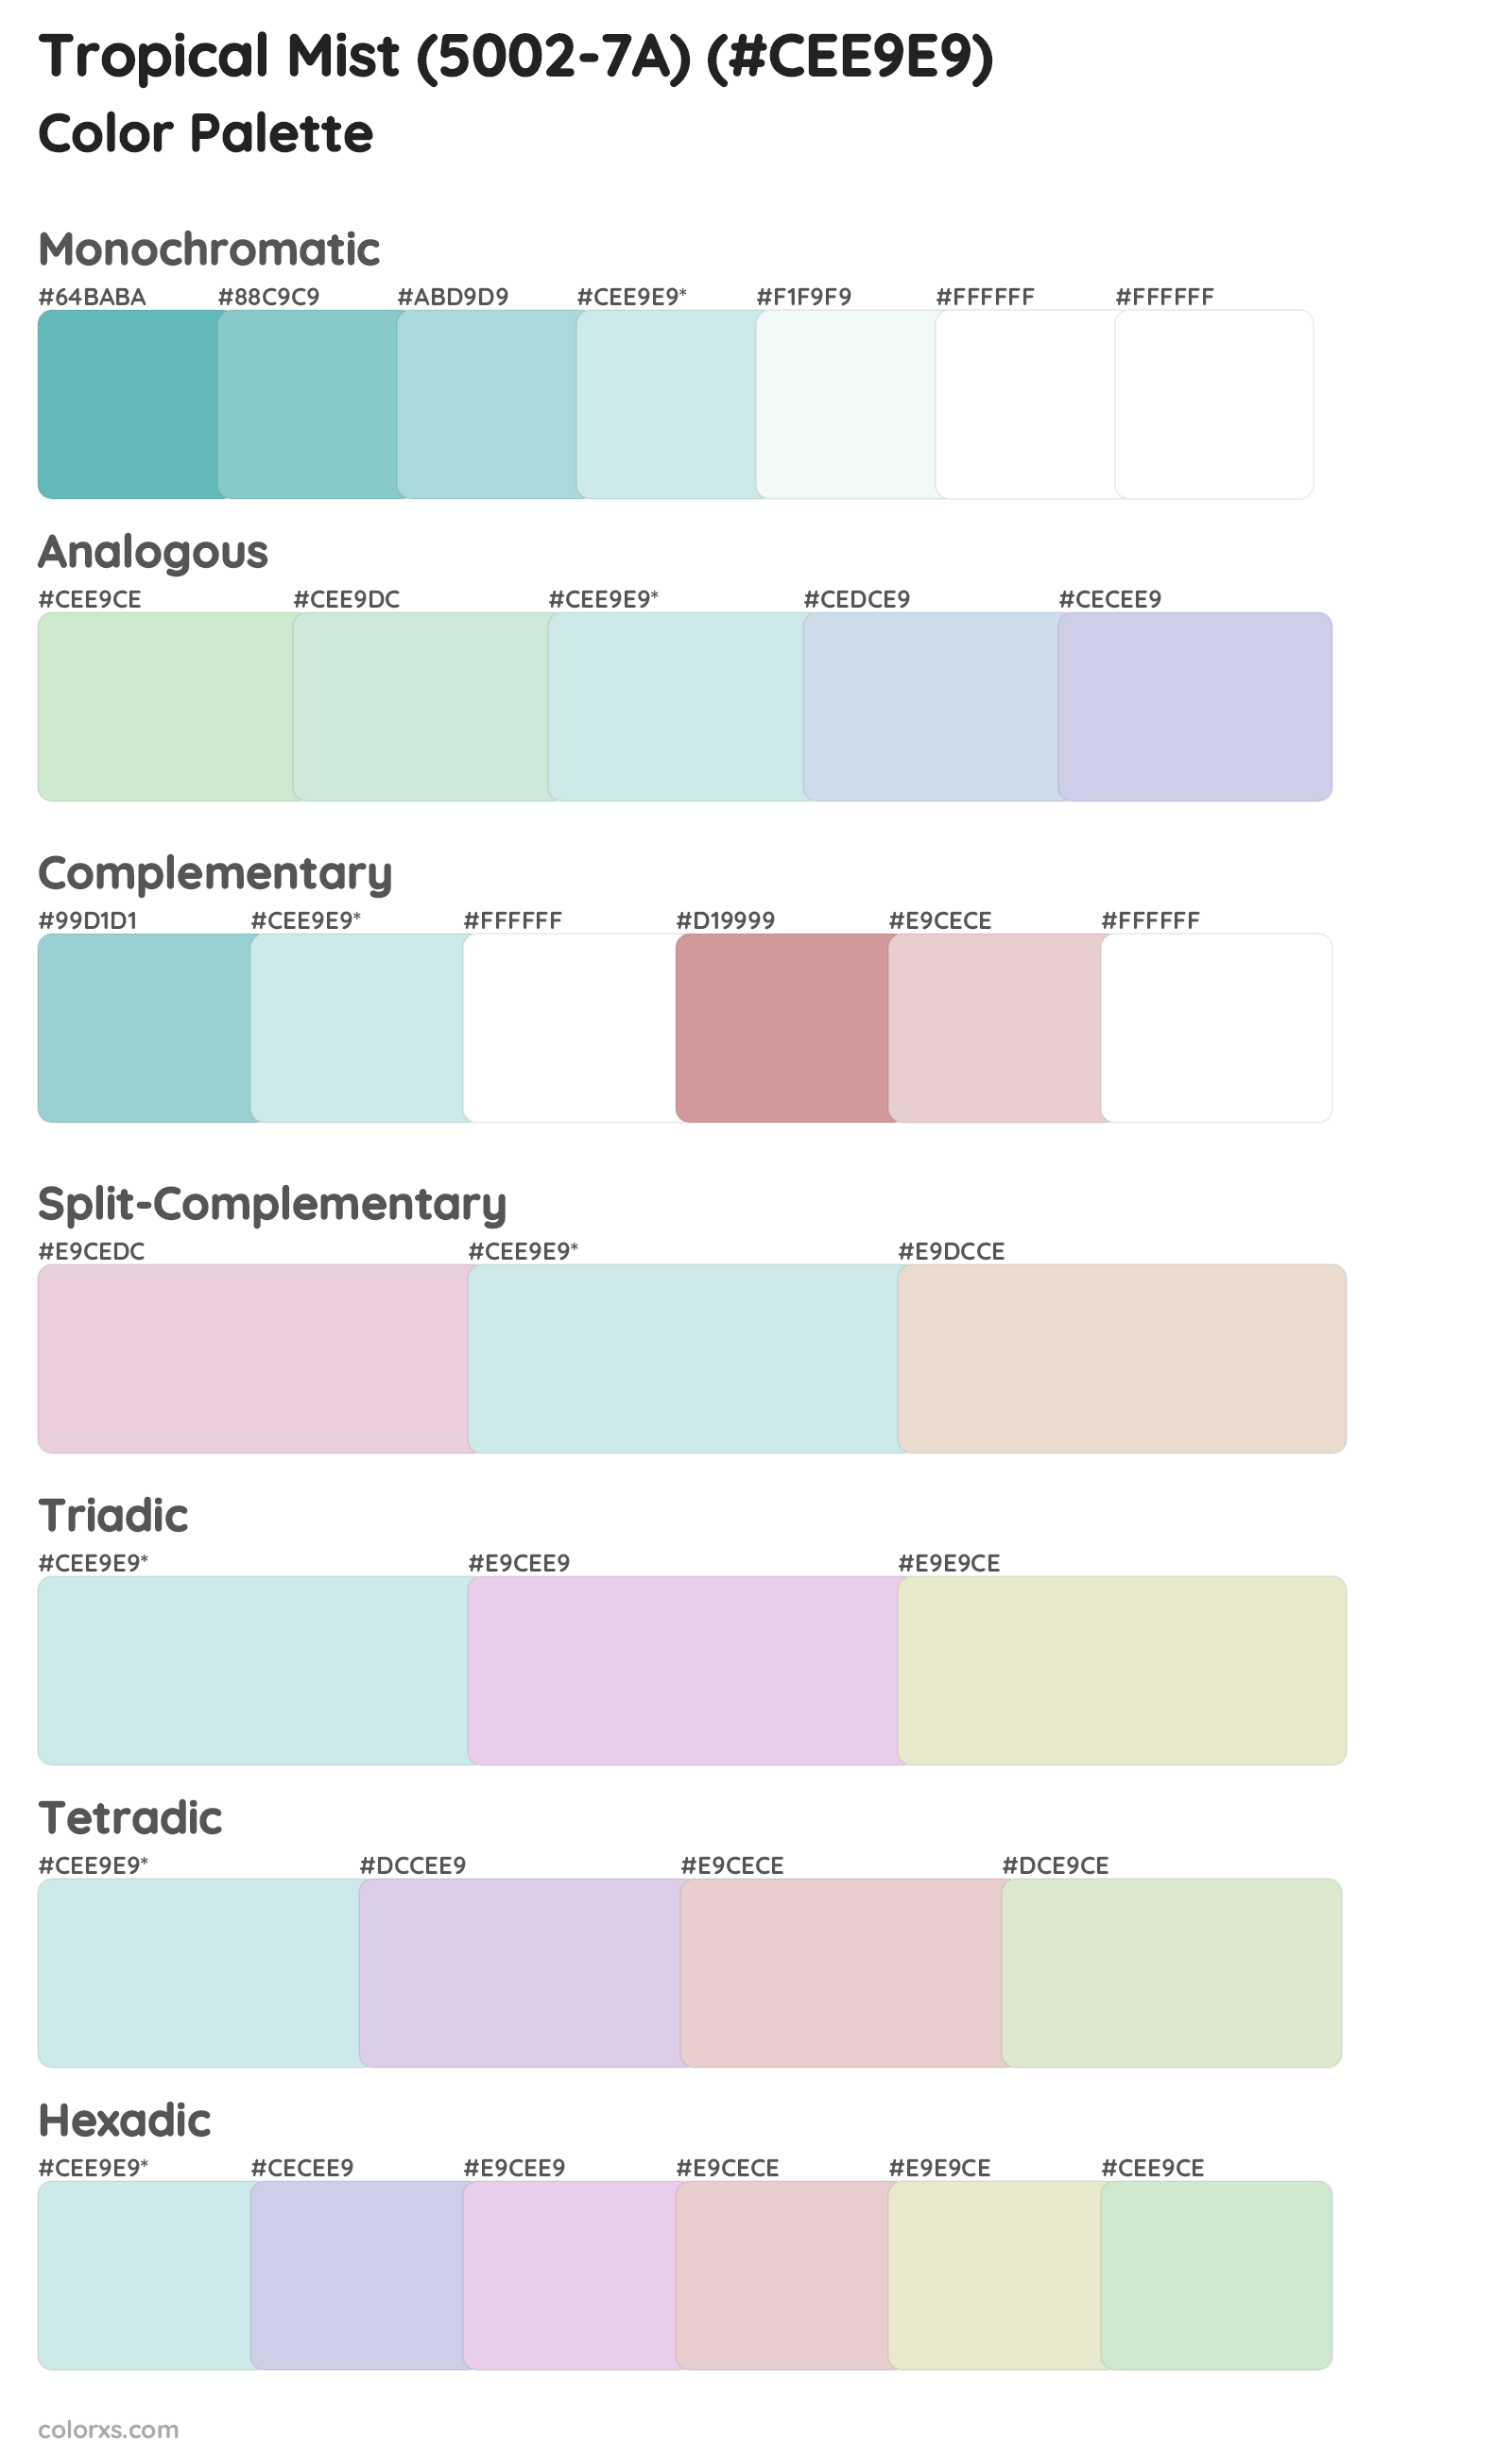 Tropical Mist (5002-7A) Color Scheme Palettes